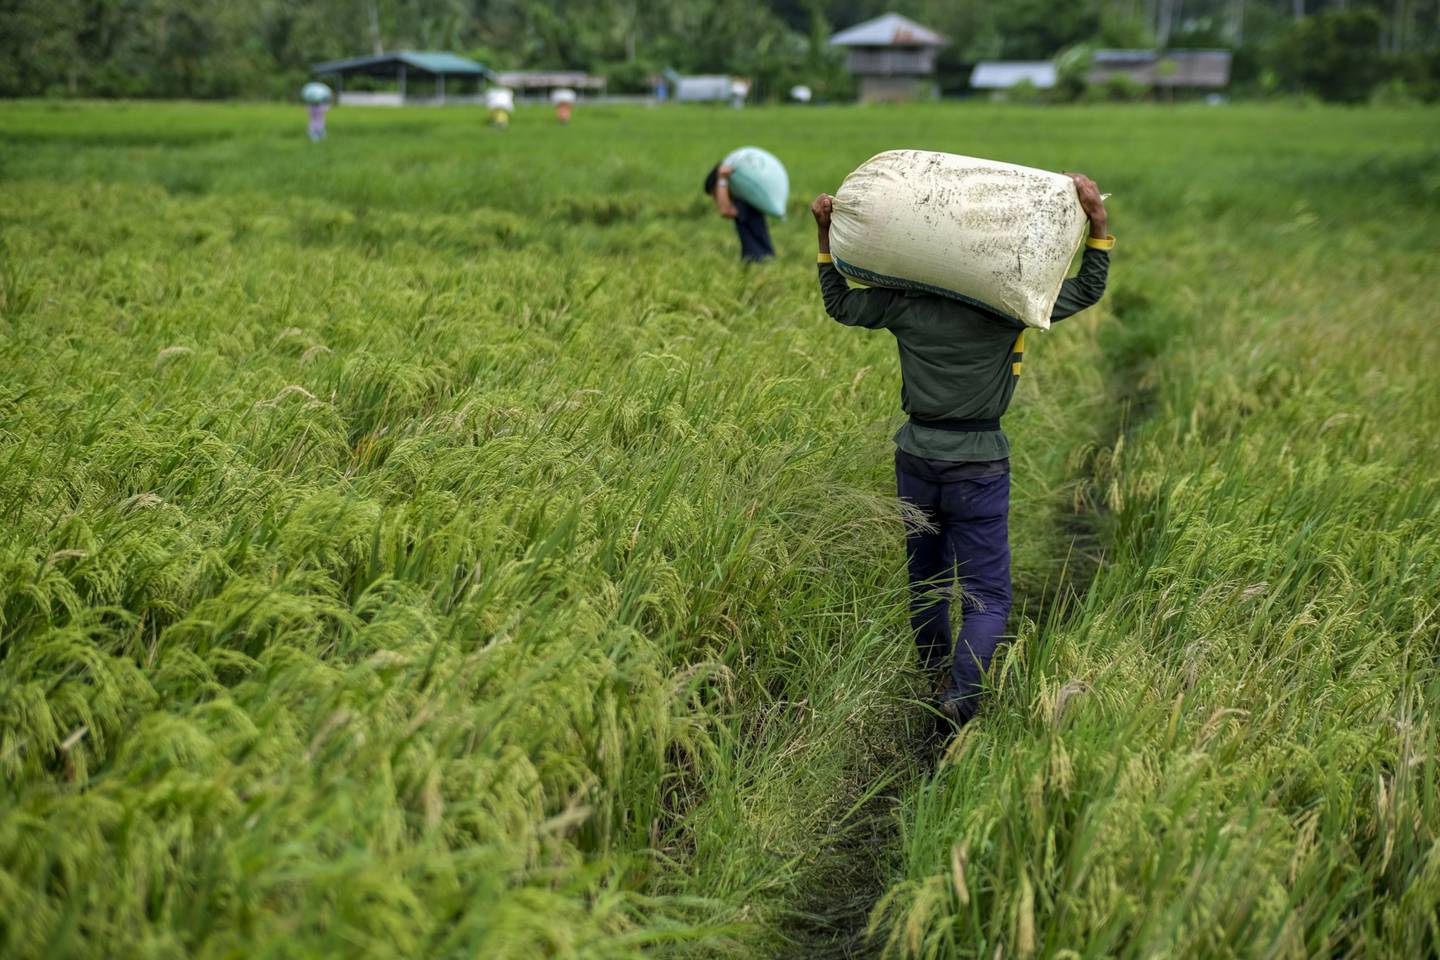 Trabajadores llevan sacos de arroz cosechado en una granja del distrito de San Antonio, provincia de Quezón, Filipinas, el lunes 11 de octubre de 2021.